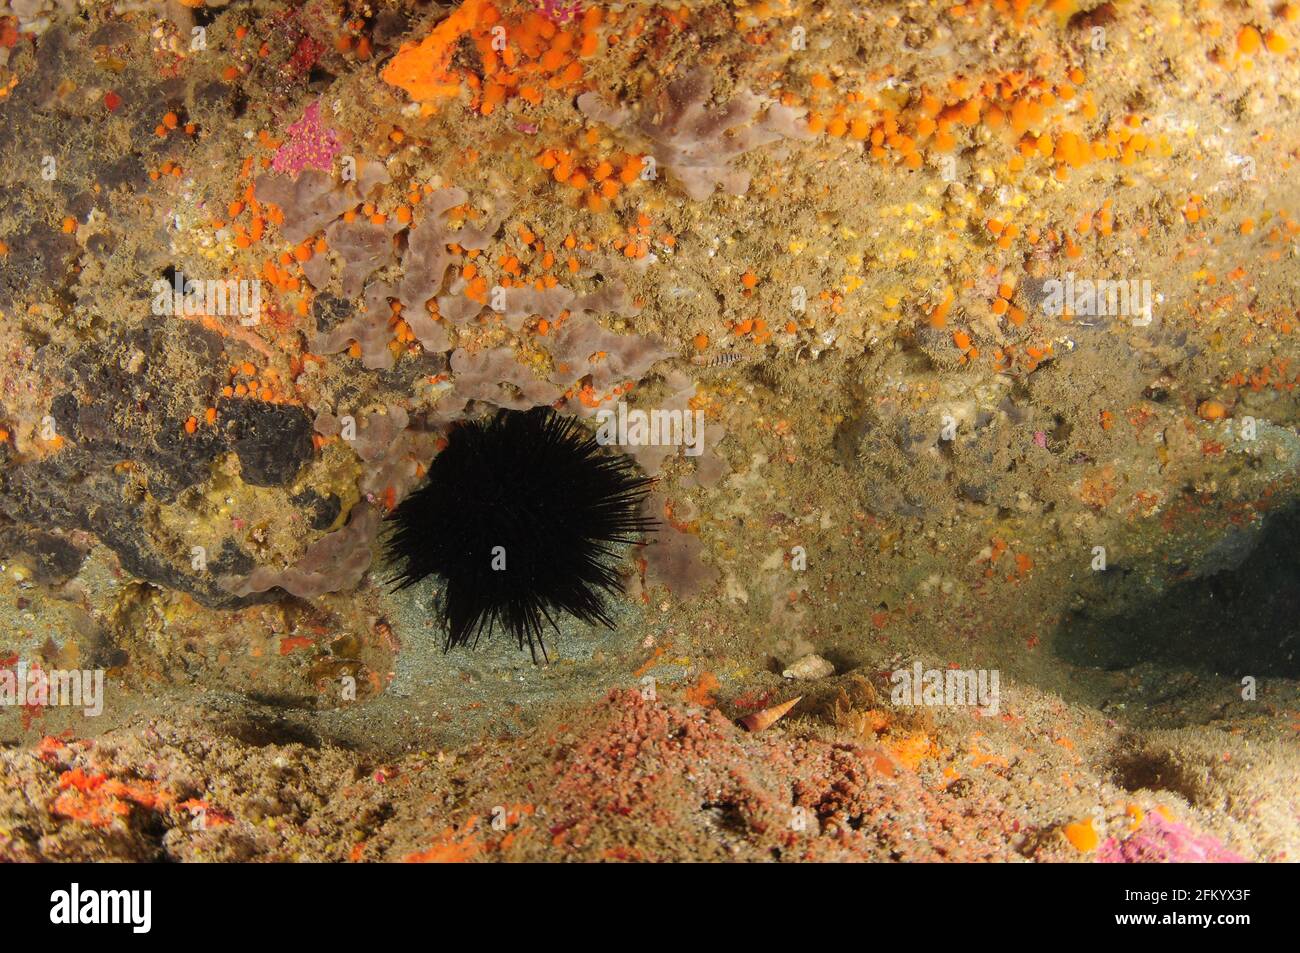 Grand oursin de mer de Rodgers presque noir Centrostephanus rodgersii se cachant dans le cravice de roche recouvert de formes de vie d'invertébrés à la rouille colorée. Banque D'Images